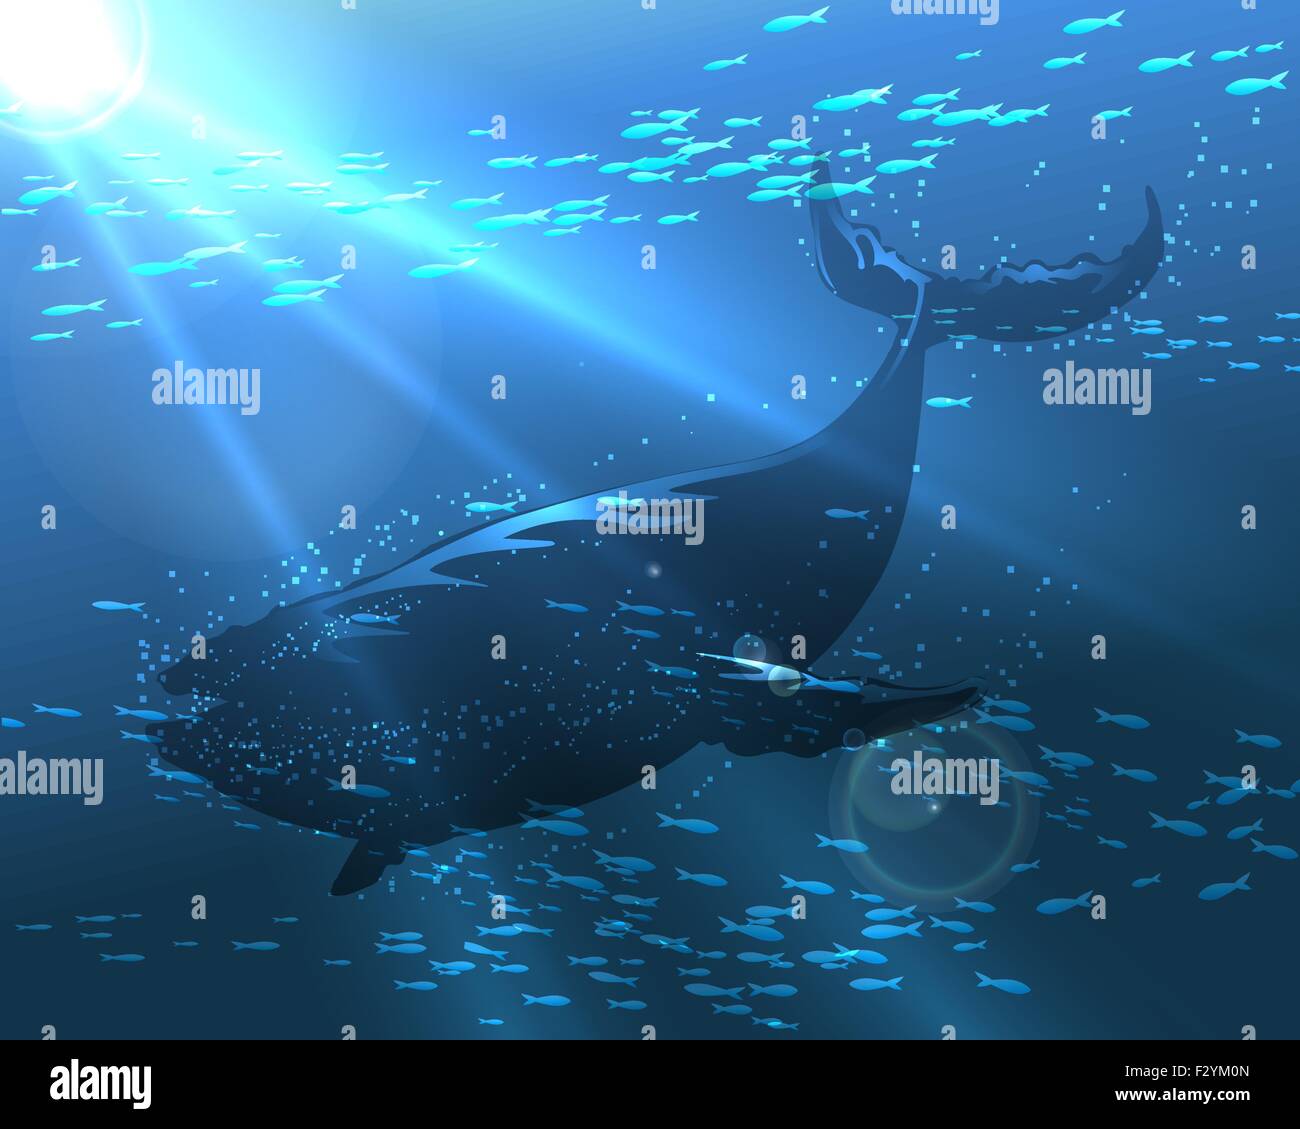 La baleine flottant dans l'océan profond. Illustration dans un style réaliste. Illustration de Vecteur